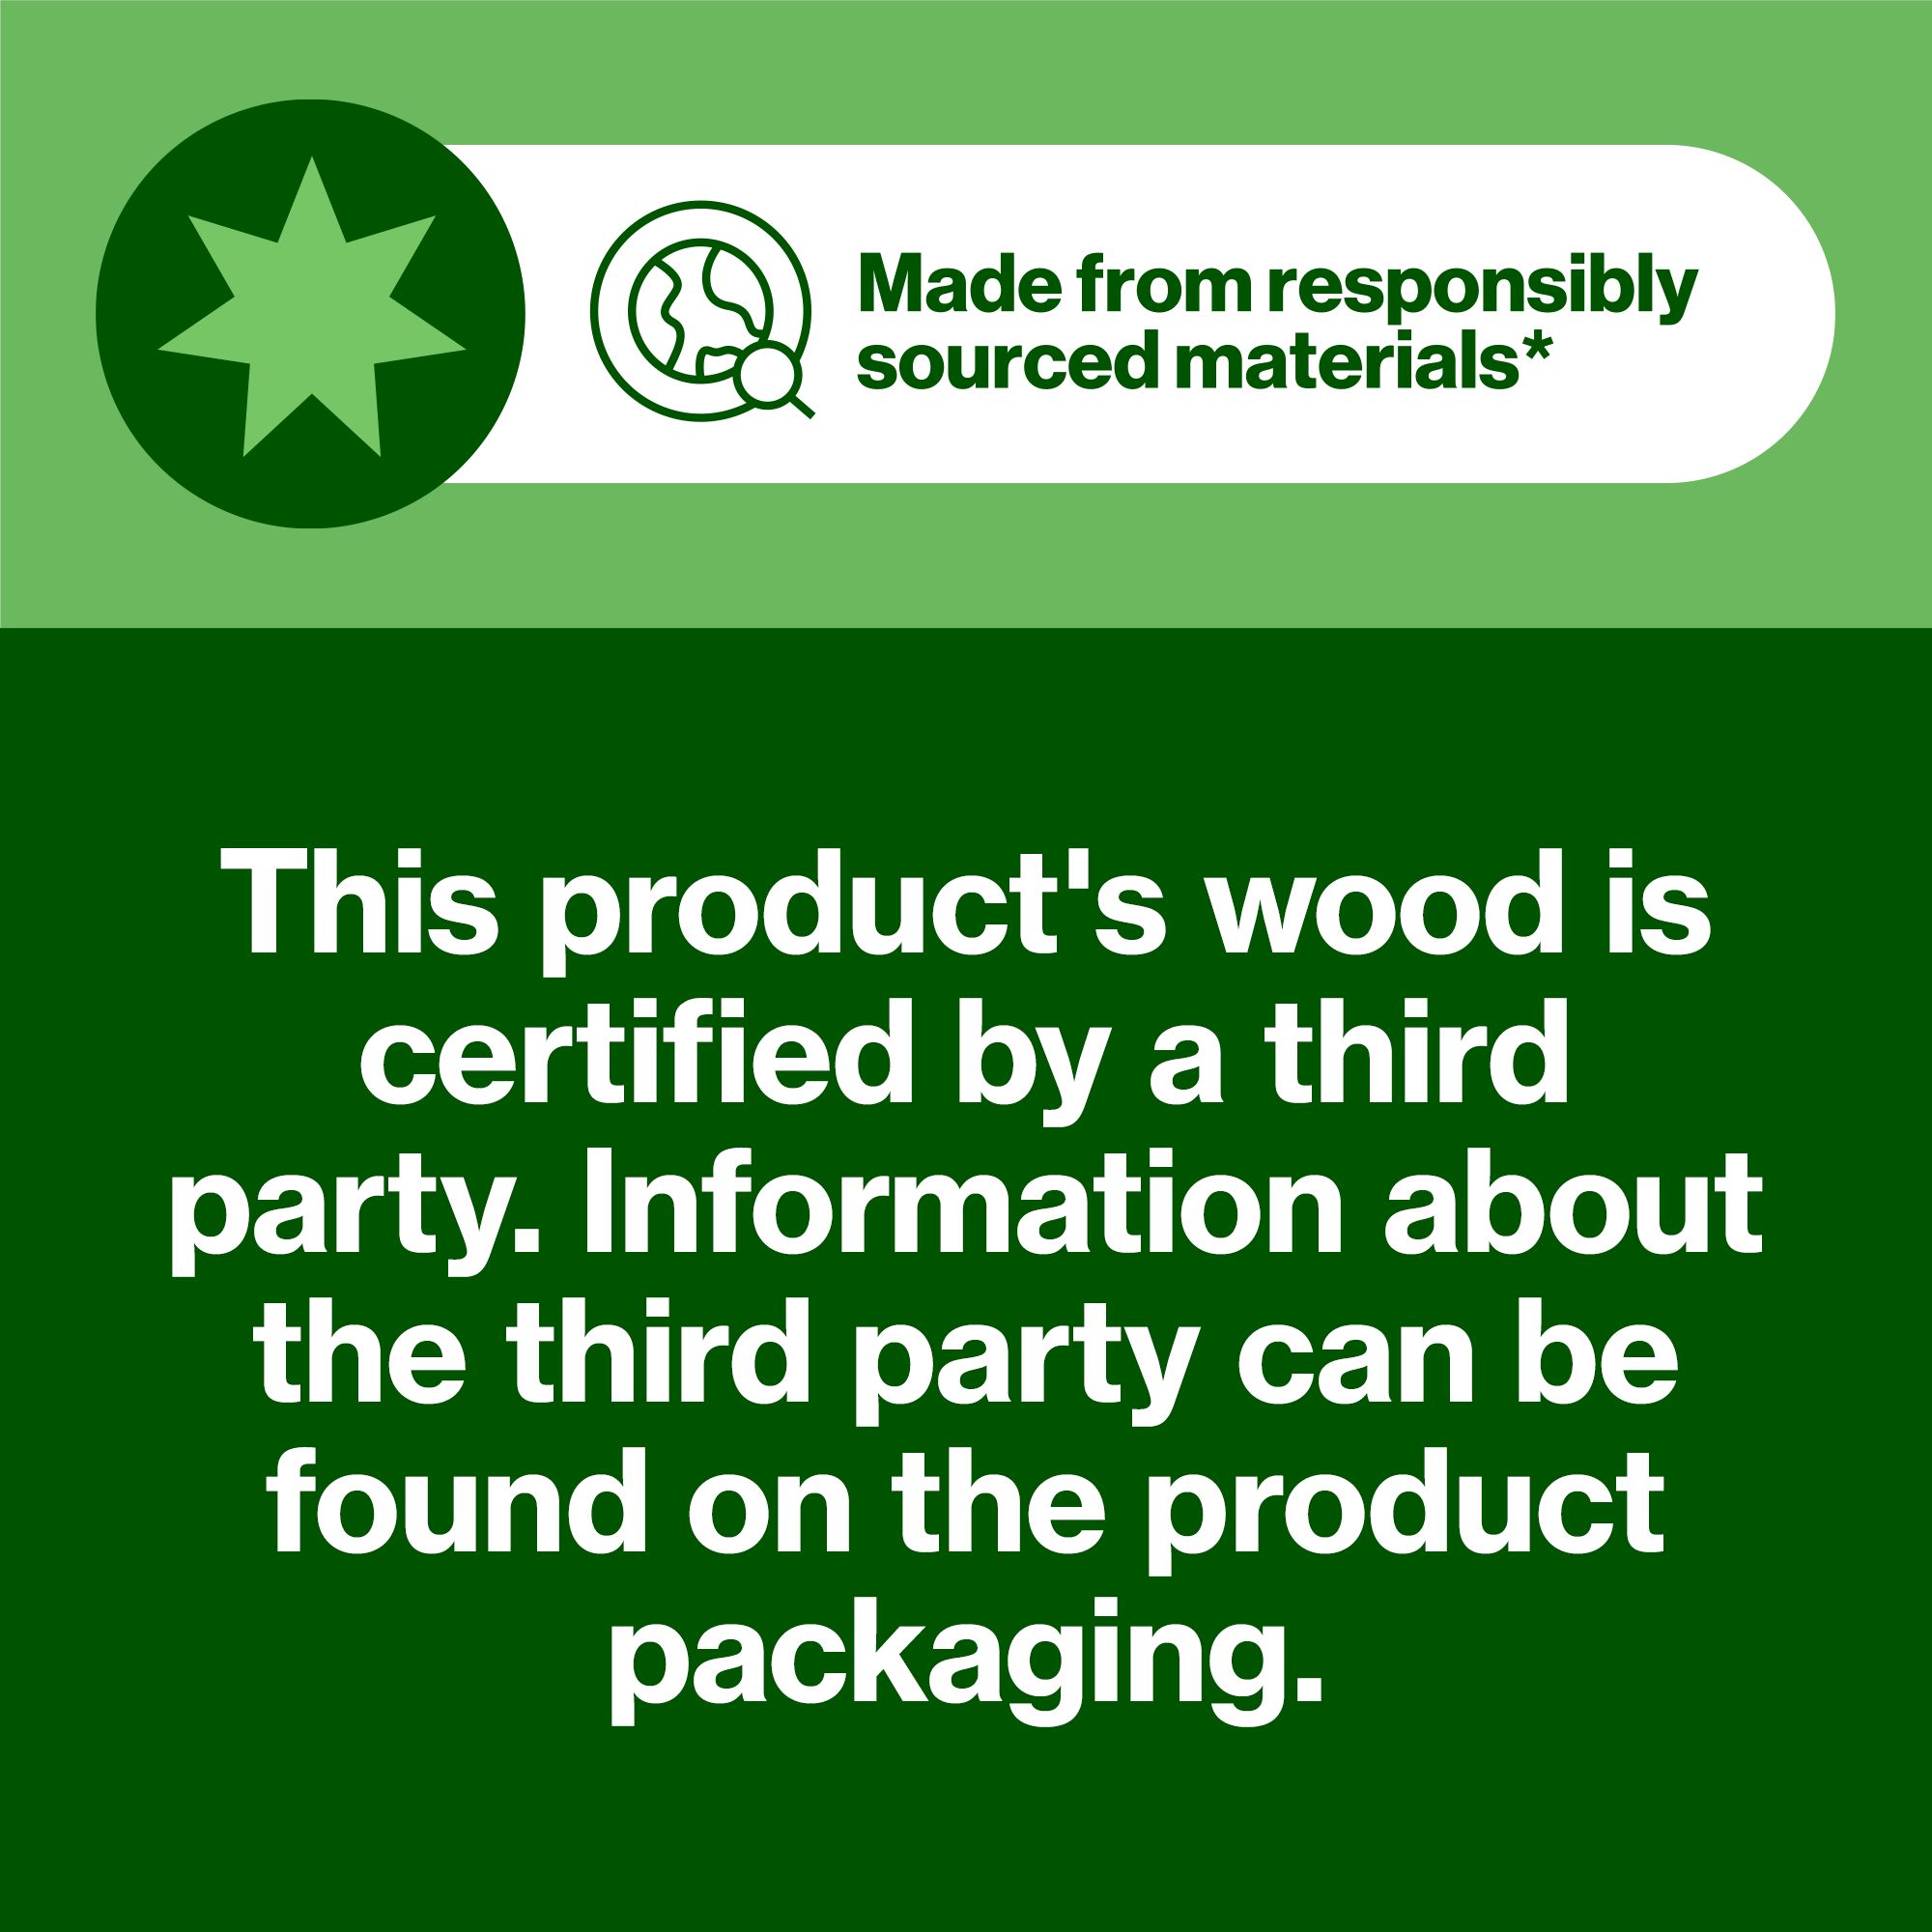 Hardwood Plywood (L)0.81m (W)0.41m (T)5mm